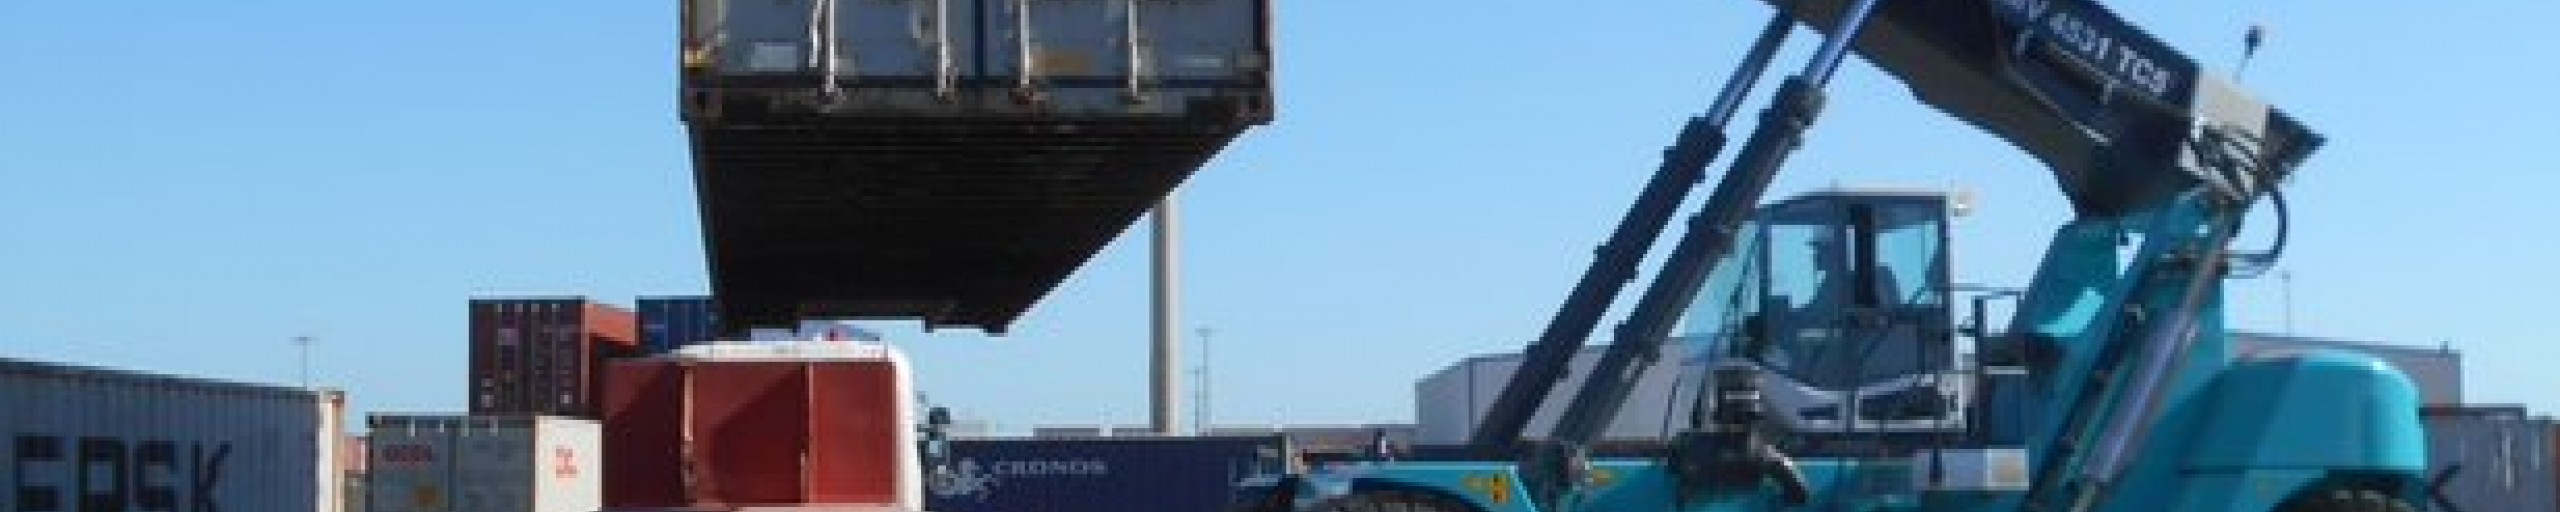 KC Lift Trucks_Customer story_Medscan_image